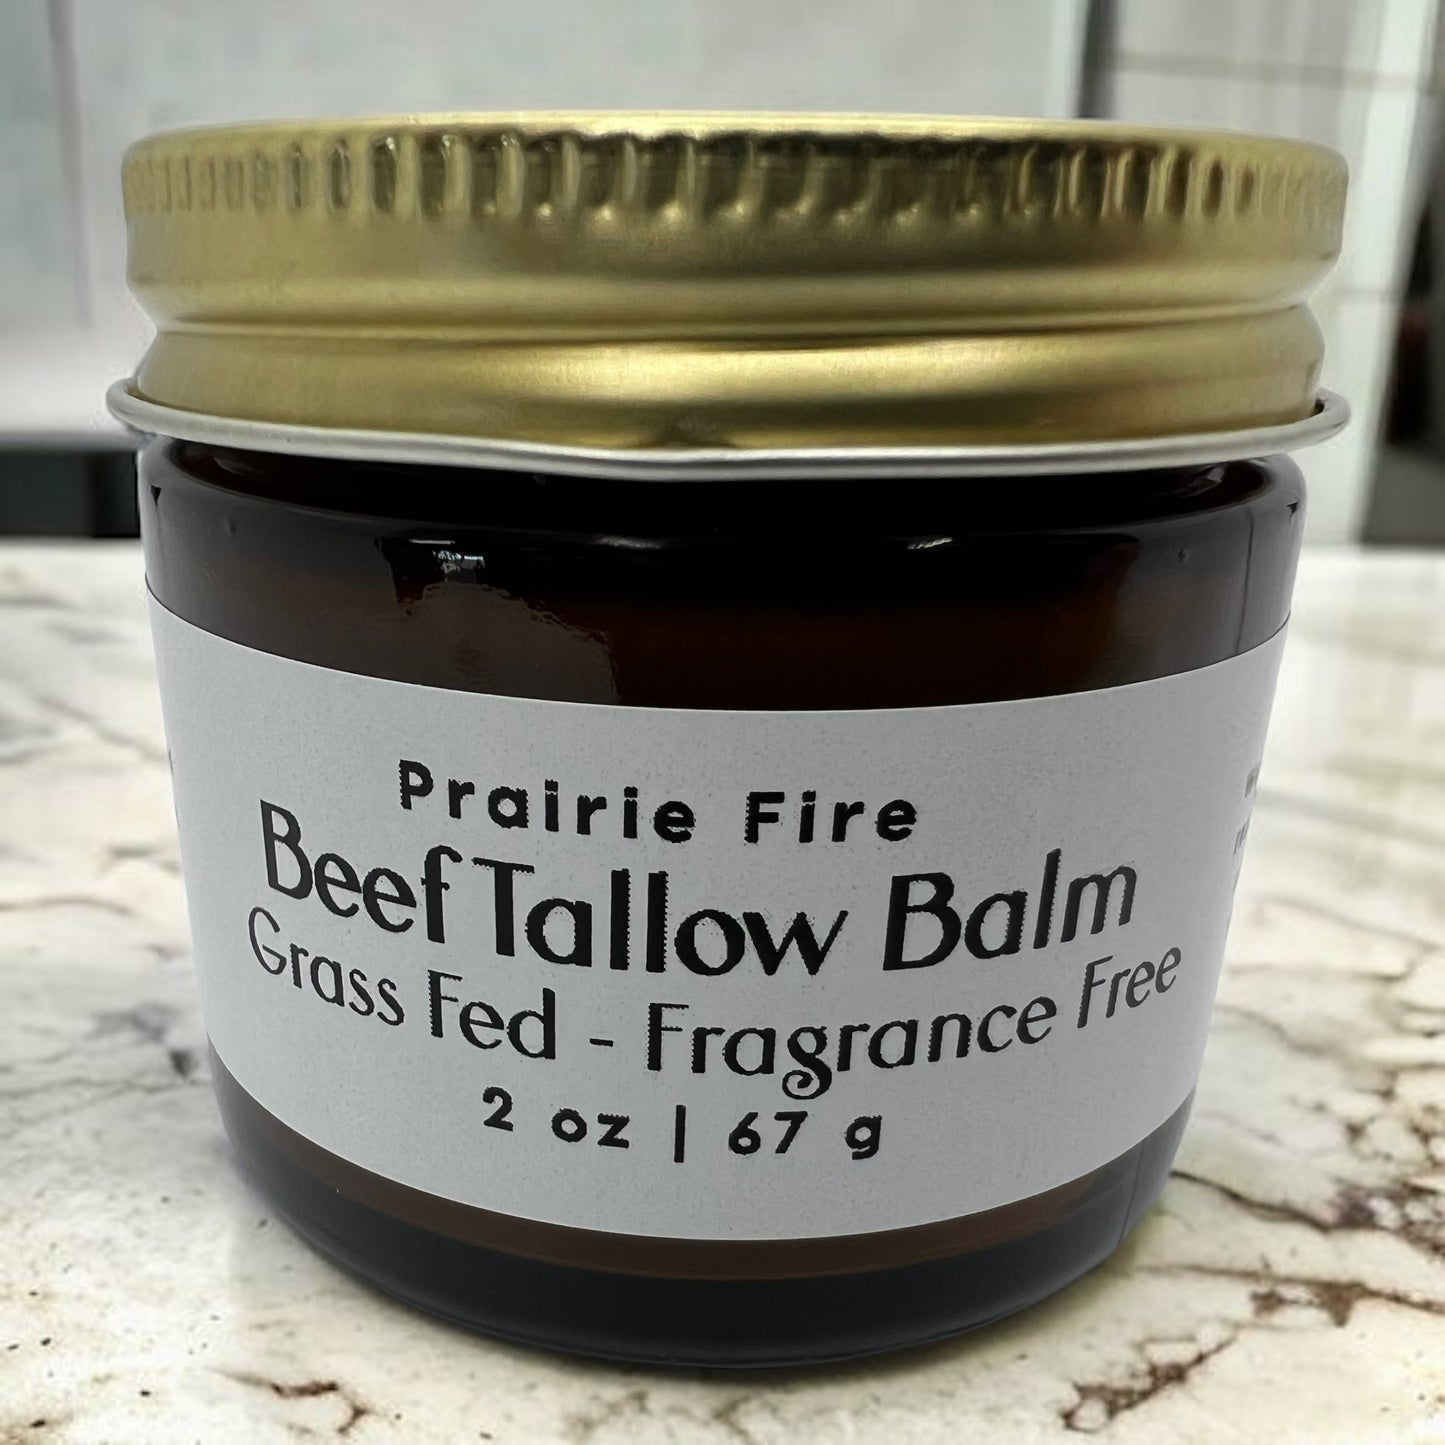 Organic Grass Fed Beef Tallow Balm - 2 oz